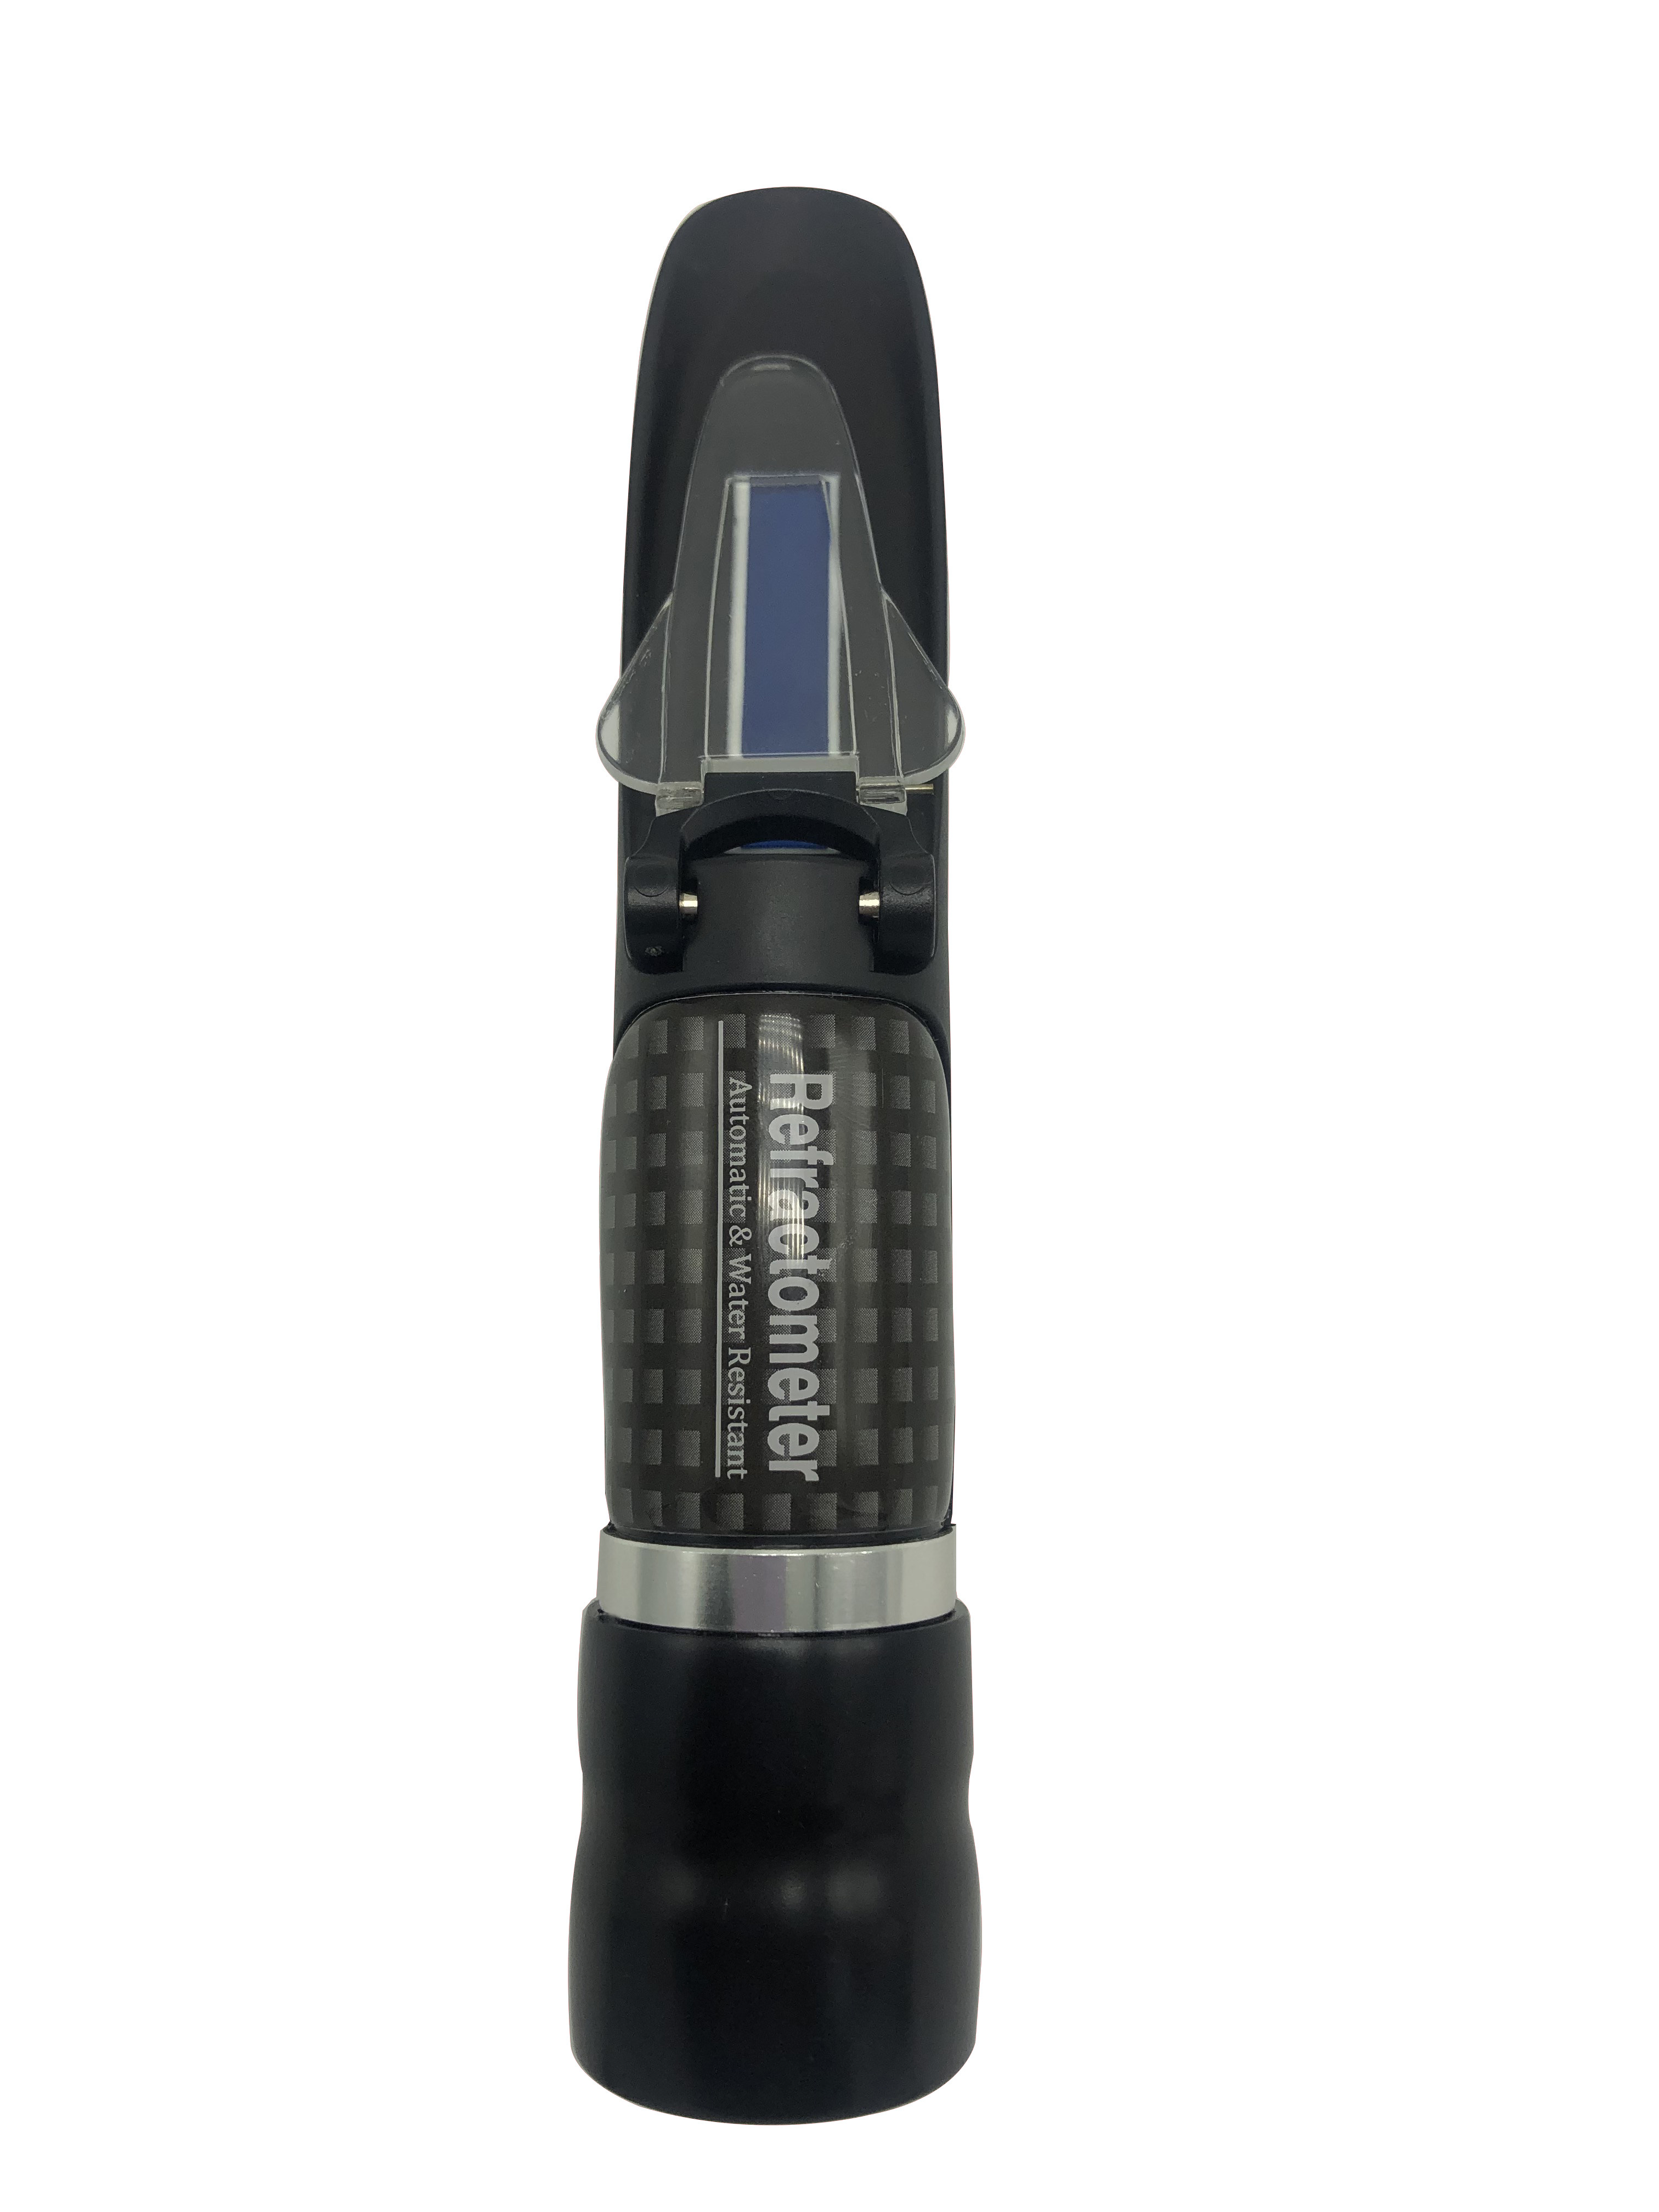 Brix Refractometer Range 28-62% of waterproof handheld refractometer